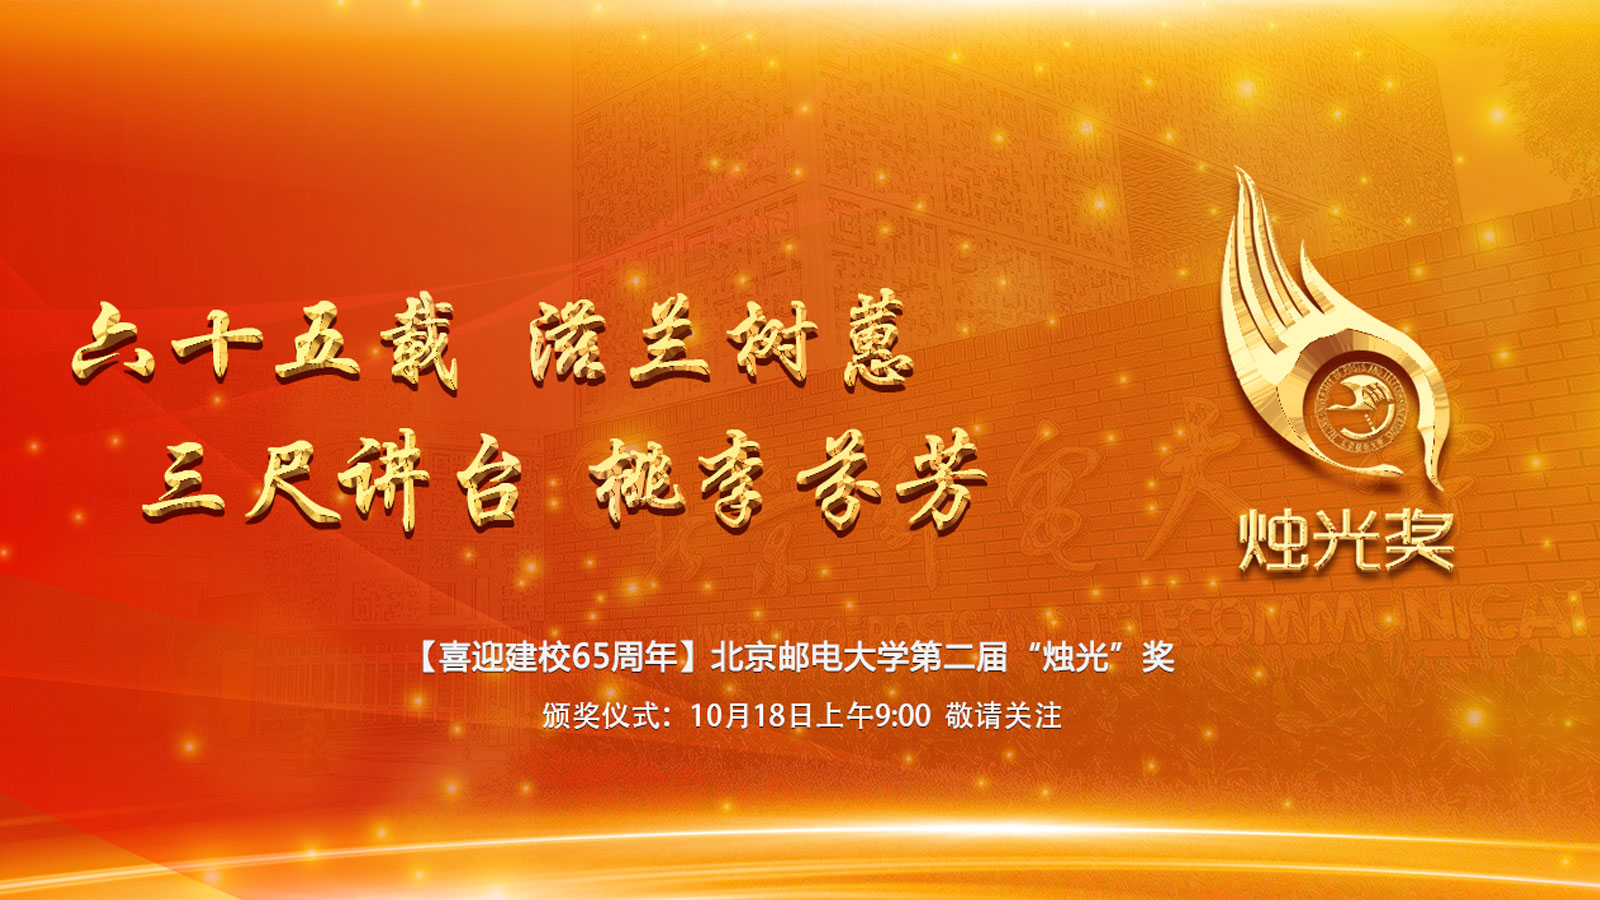 北京邮电大学第二届“烛光”奖颁奖仪式